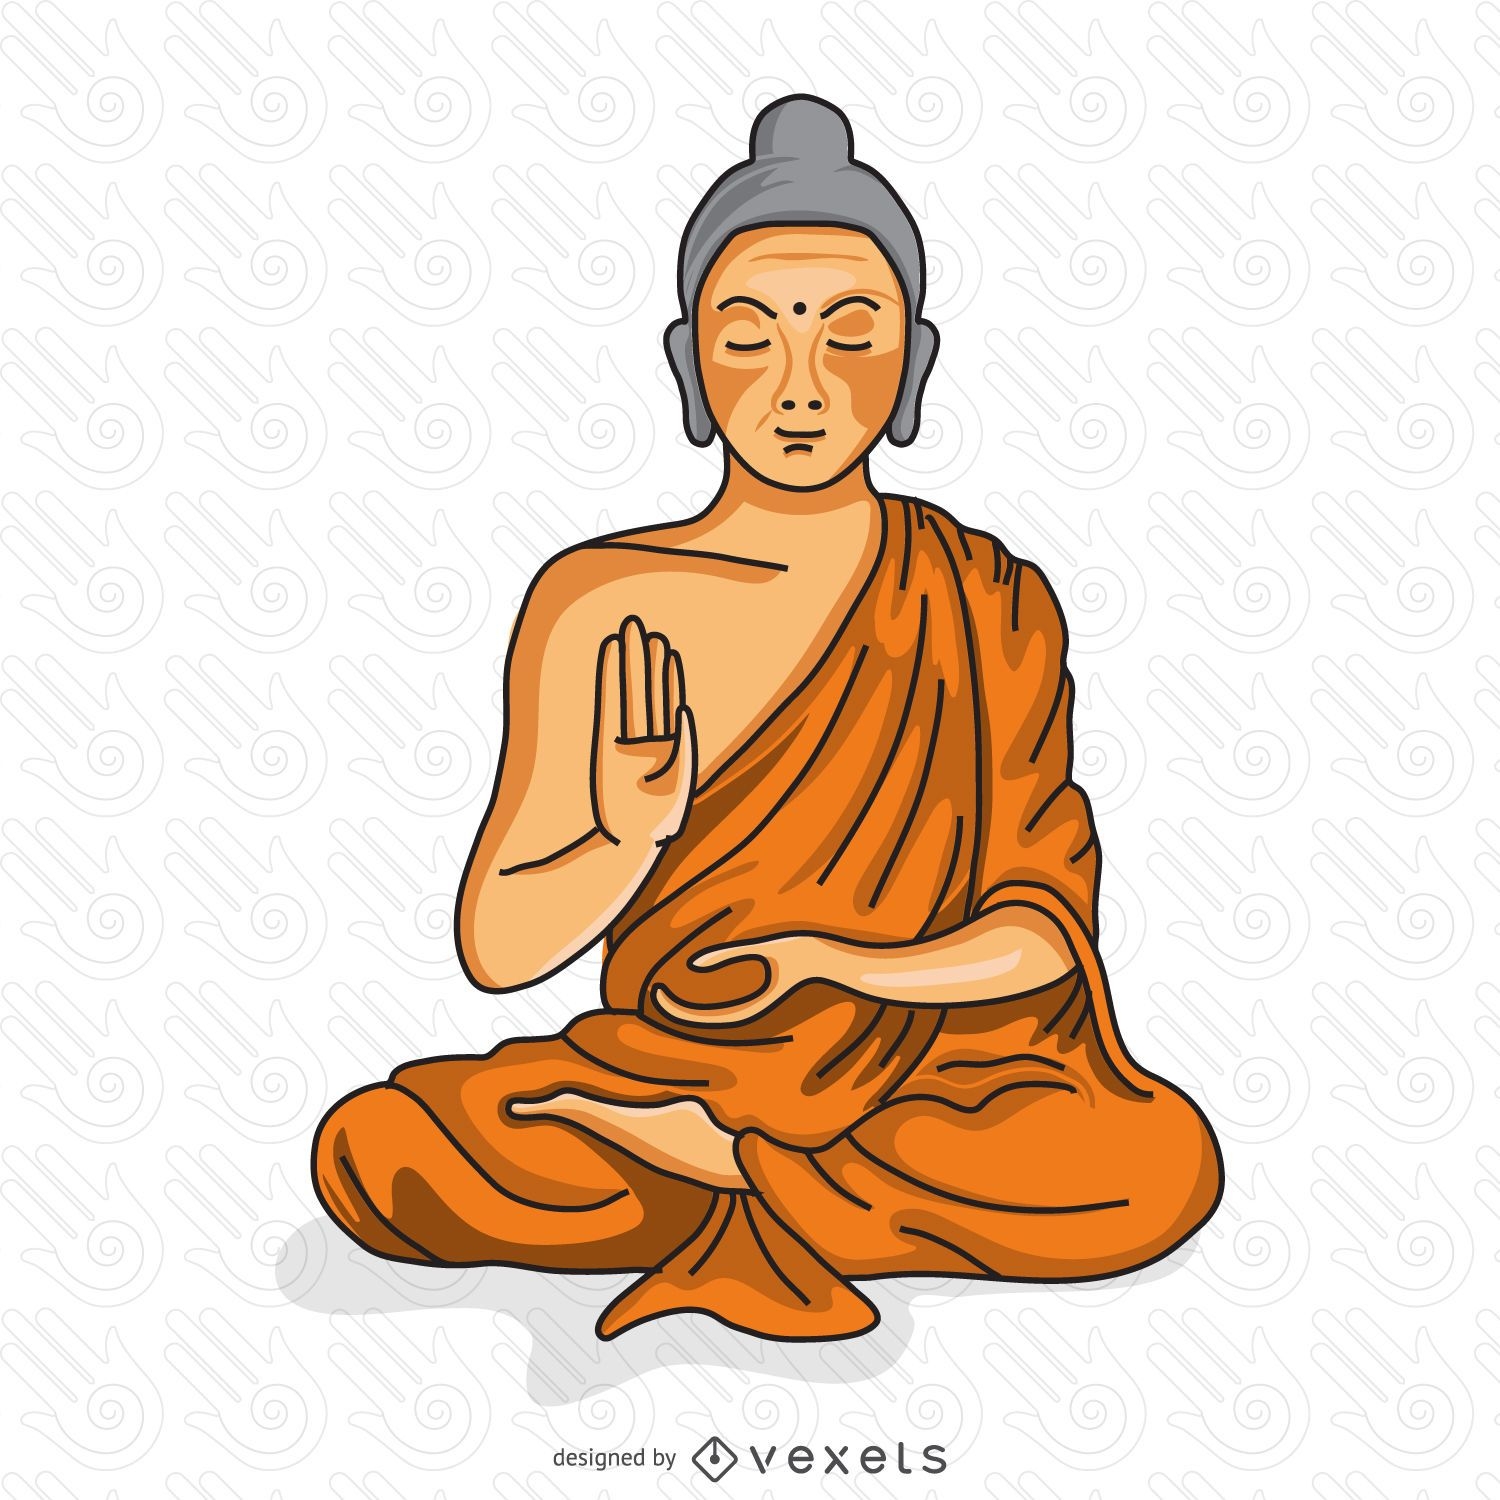 Buddhistischer M?nch der Illustration meditiert